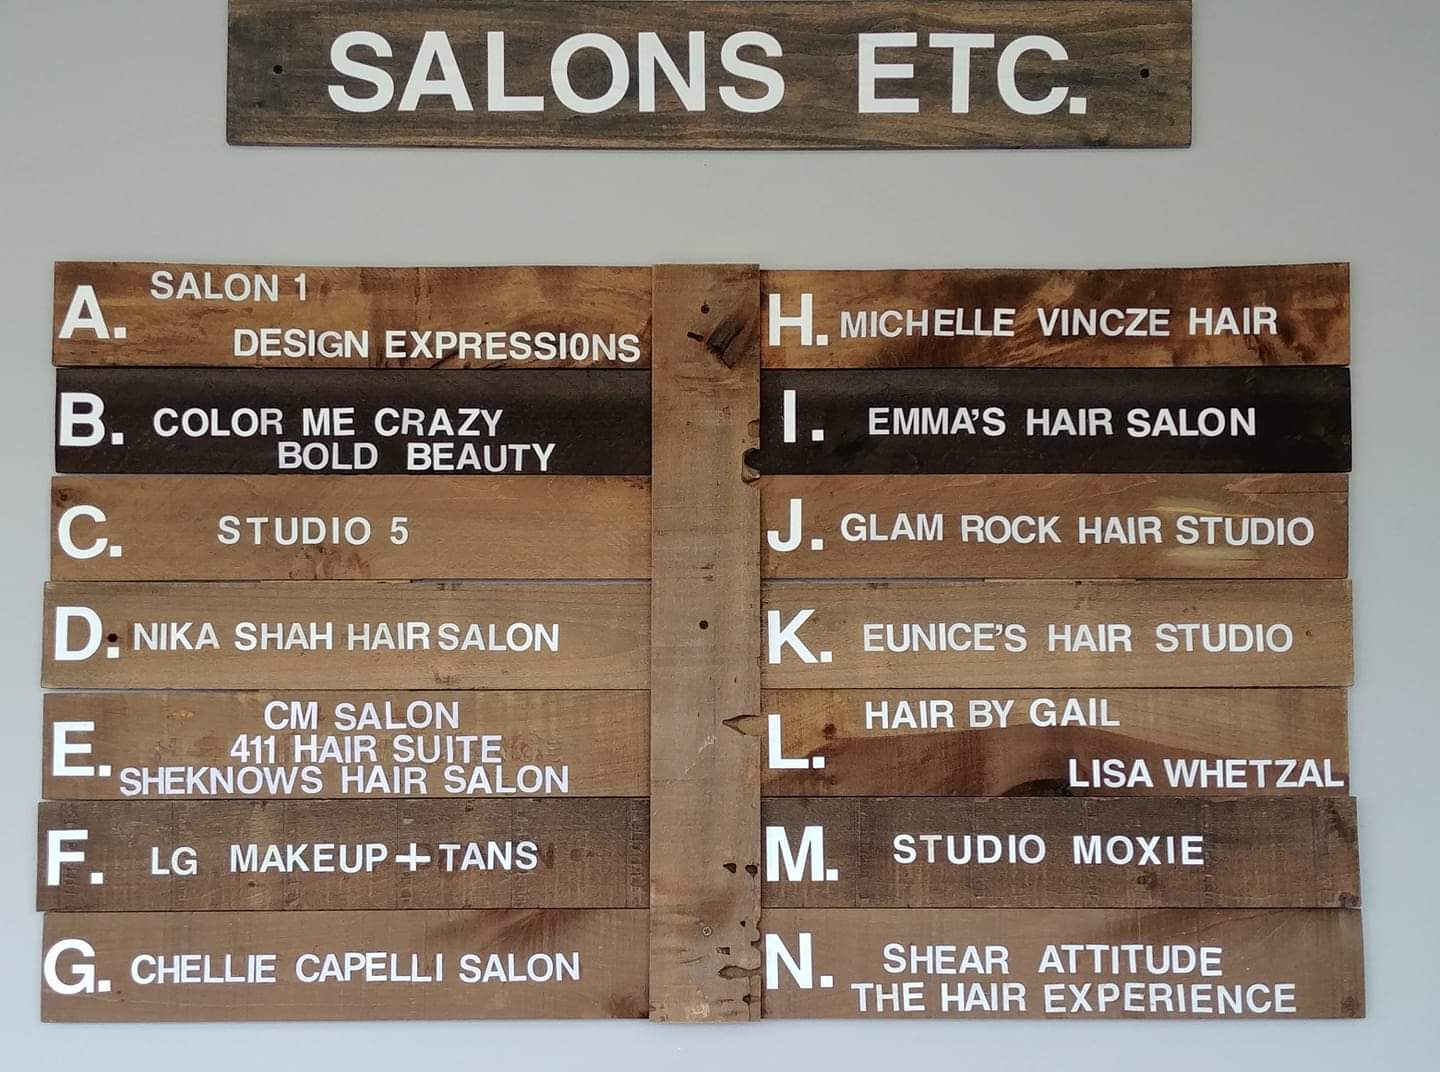 Salon's Etc